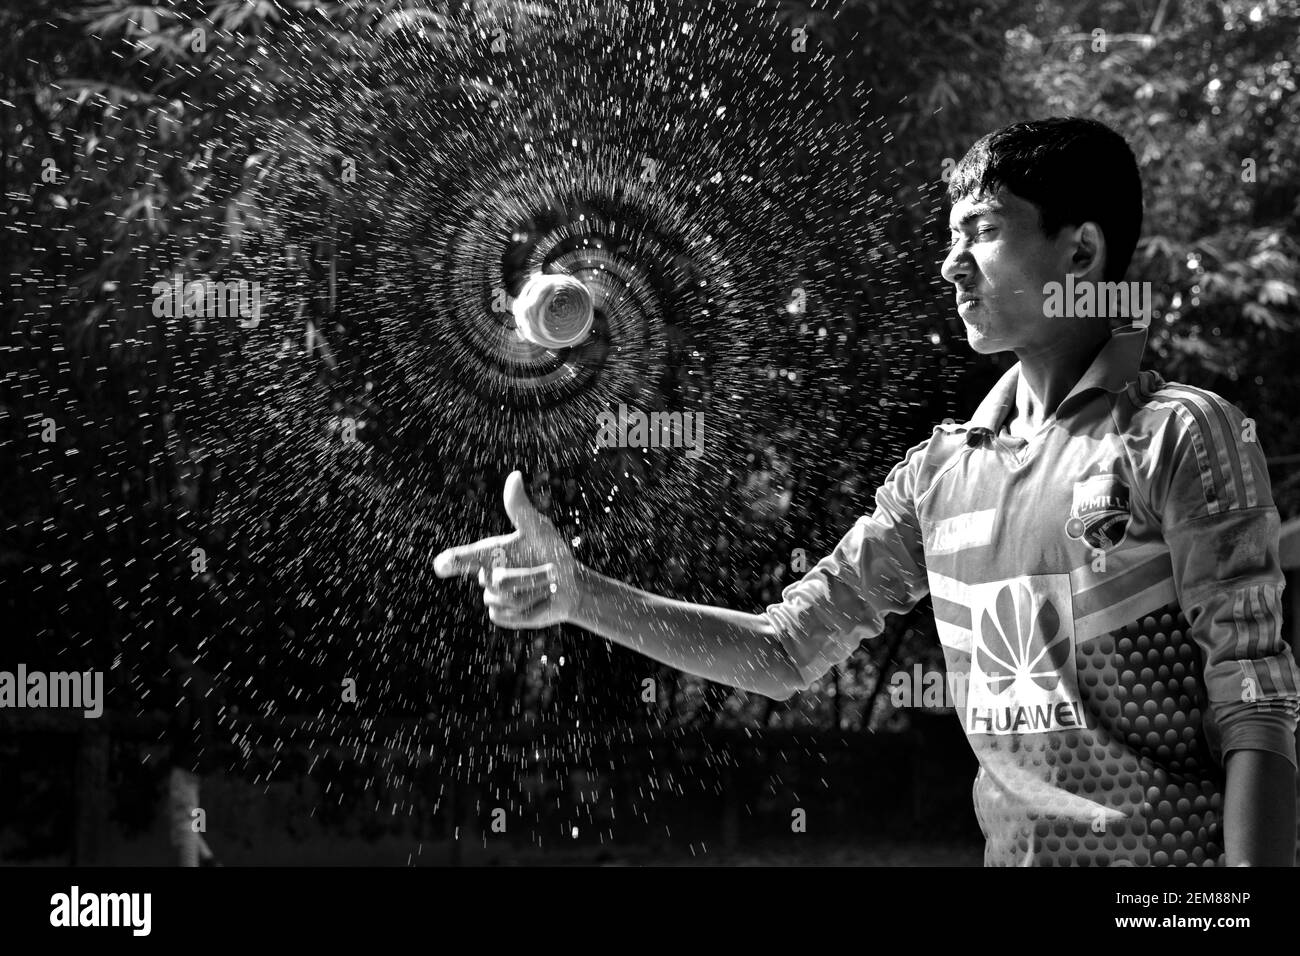 Cumilla, Bangladesh - 24 novembre 2017: Il ragazzo sta spruzzando acqua con una palla di cricket. Bianco e nero Foto Stock